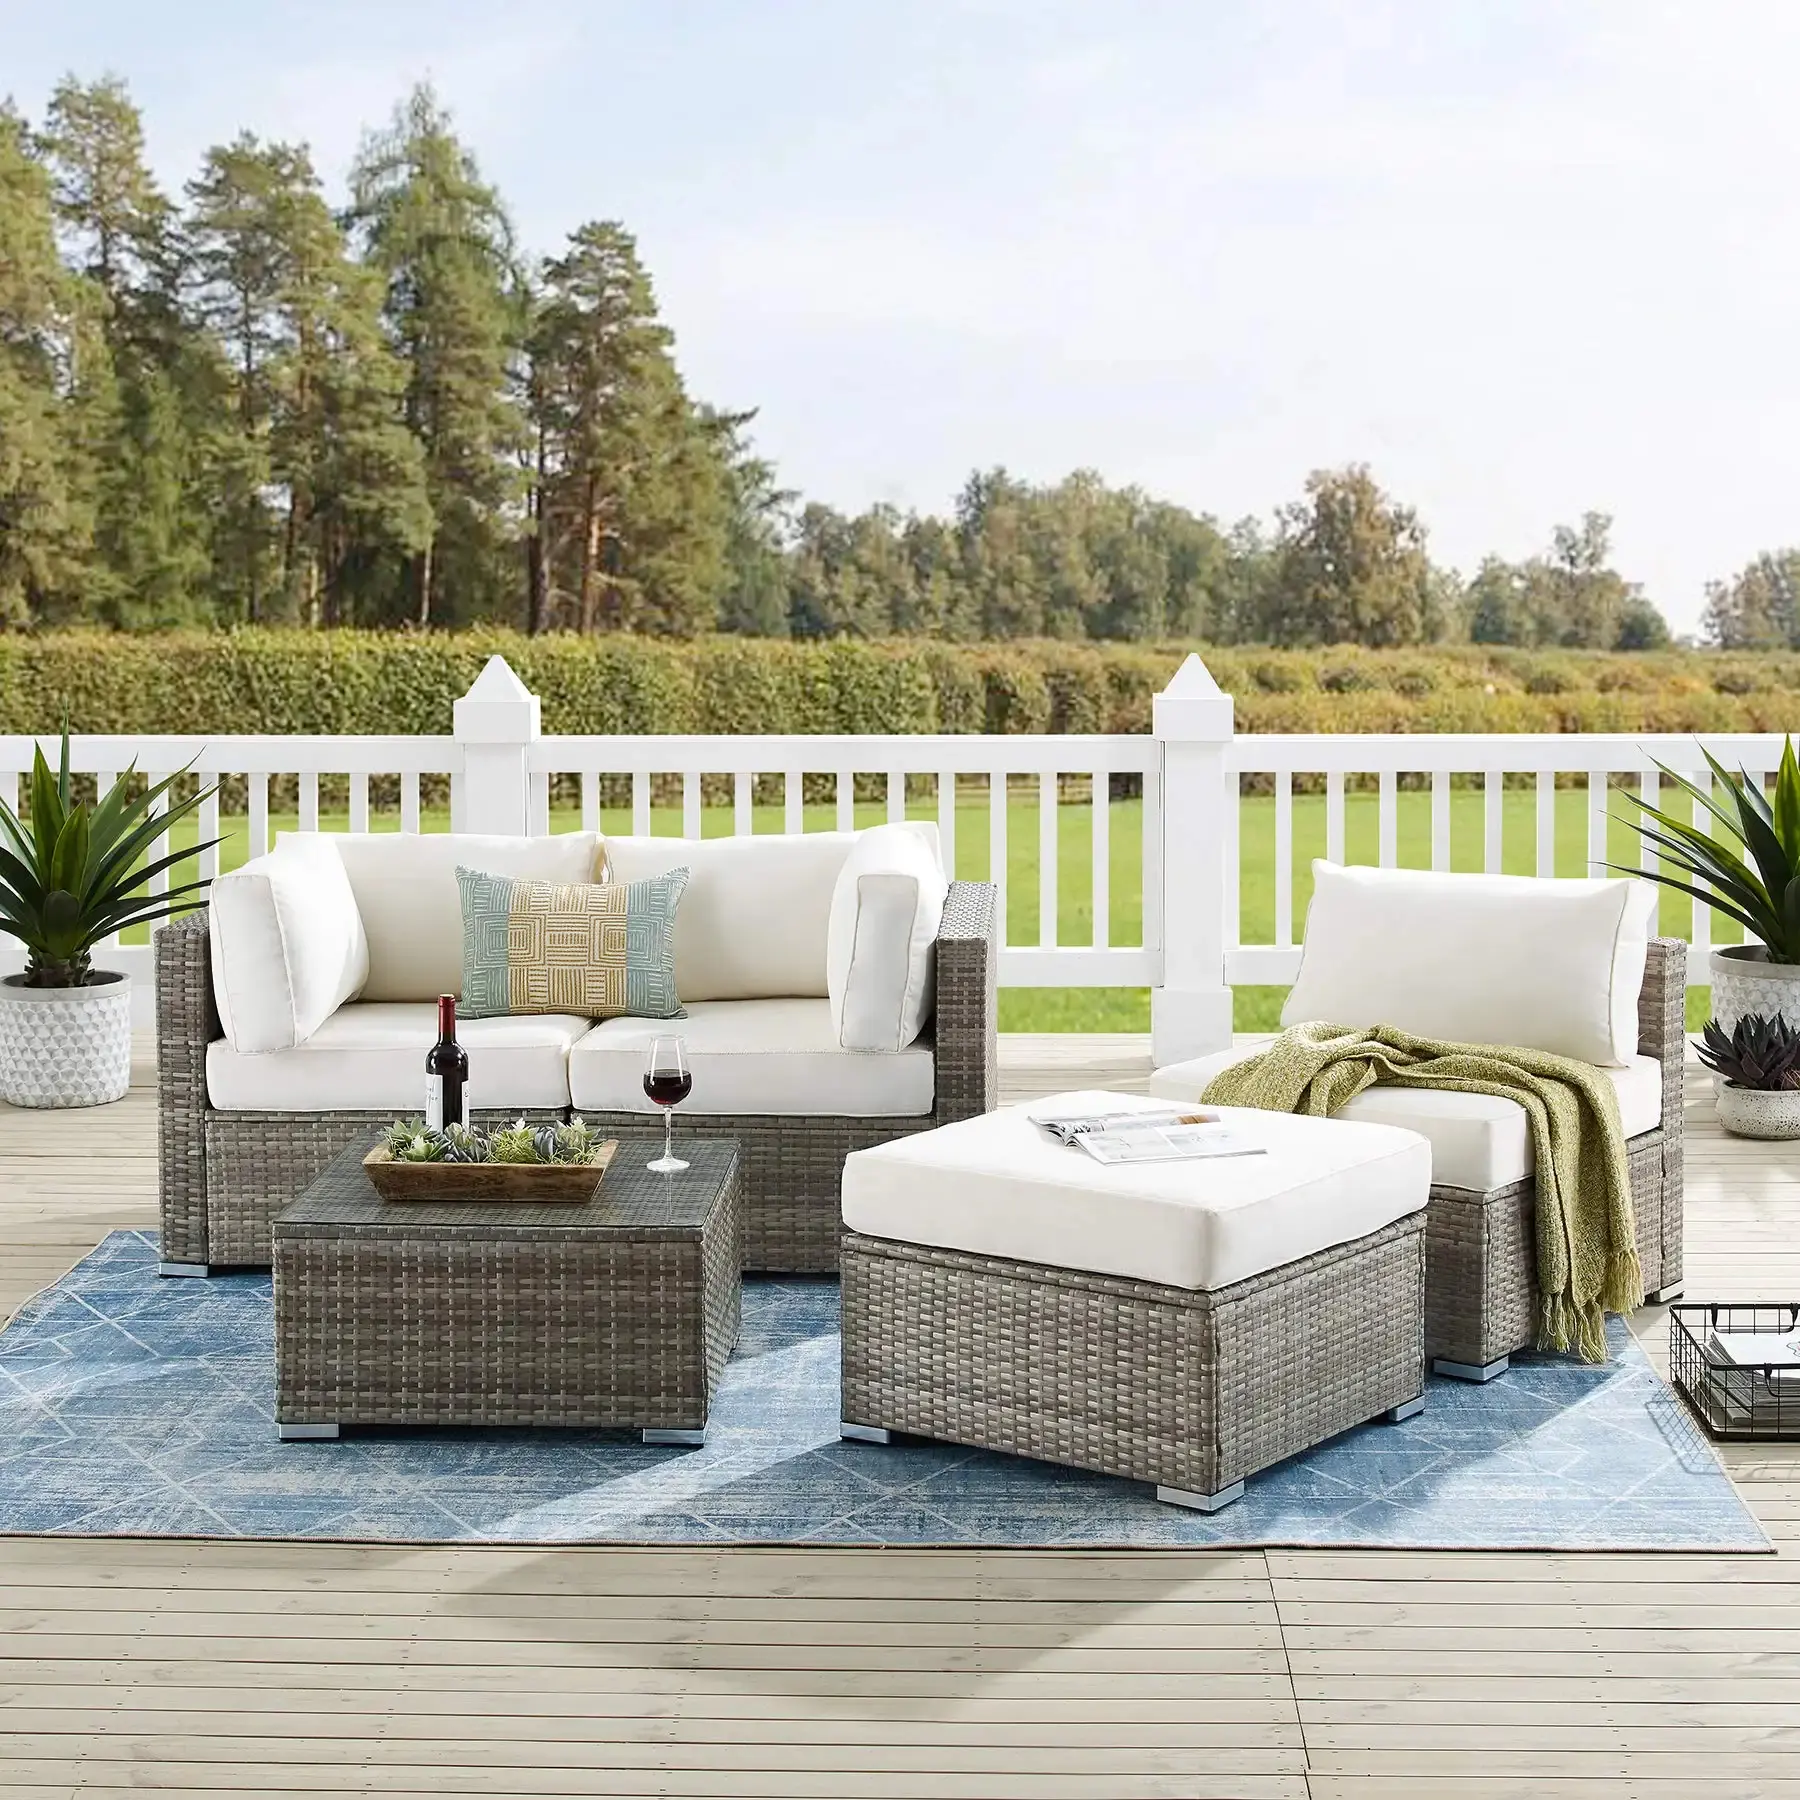 Freiluft-Möbel-Sets Garten Lounge Rattan L-Form Sofas Set Terrasse Weide Gesprächssets Neues Design Luxus geteiltes Sofa